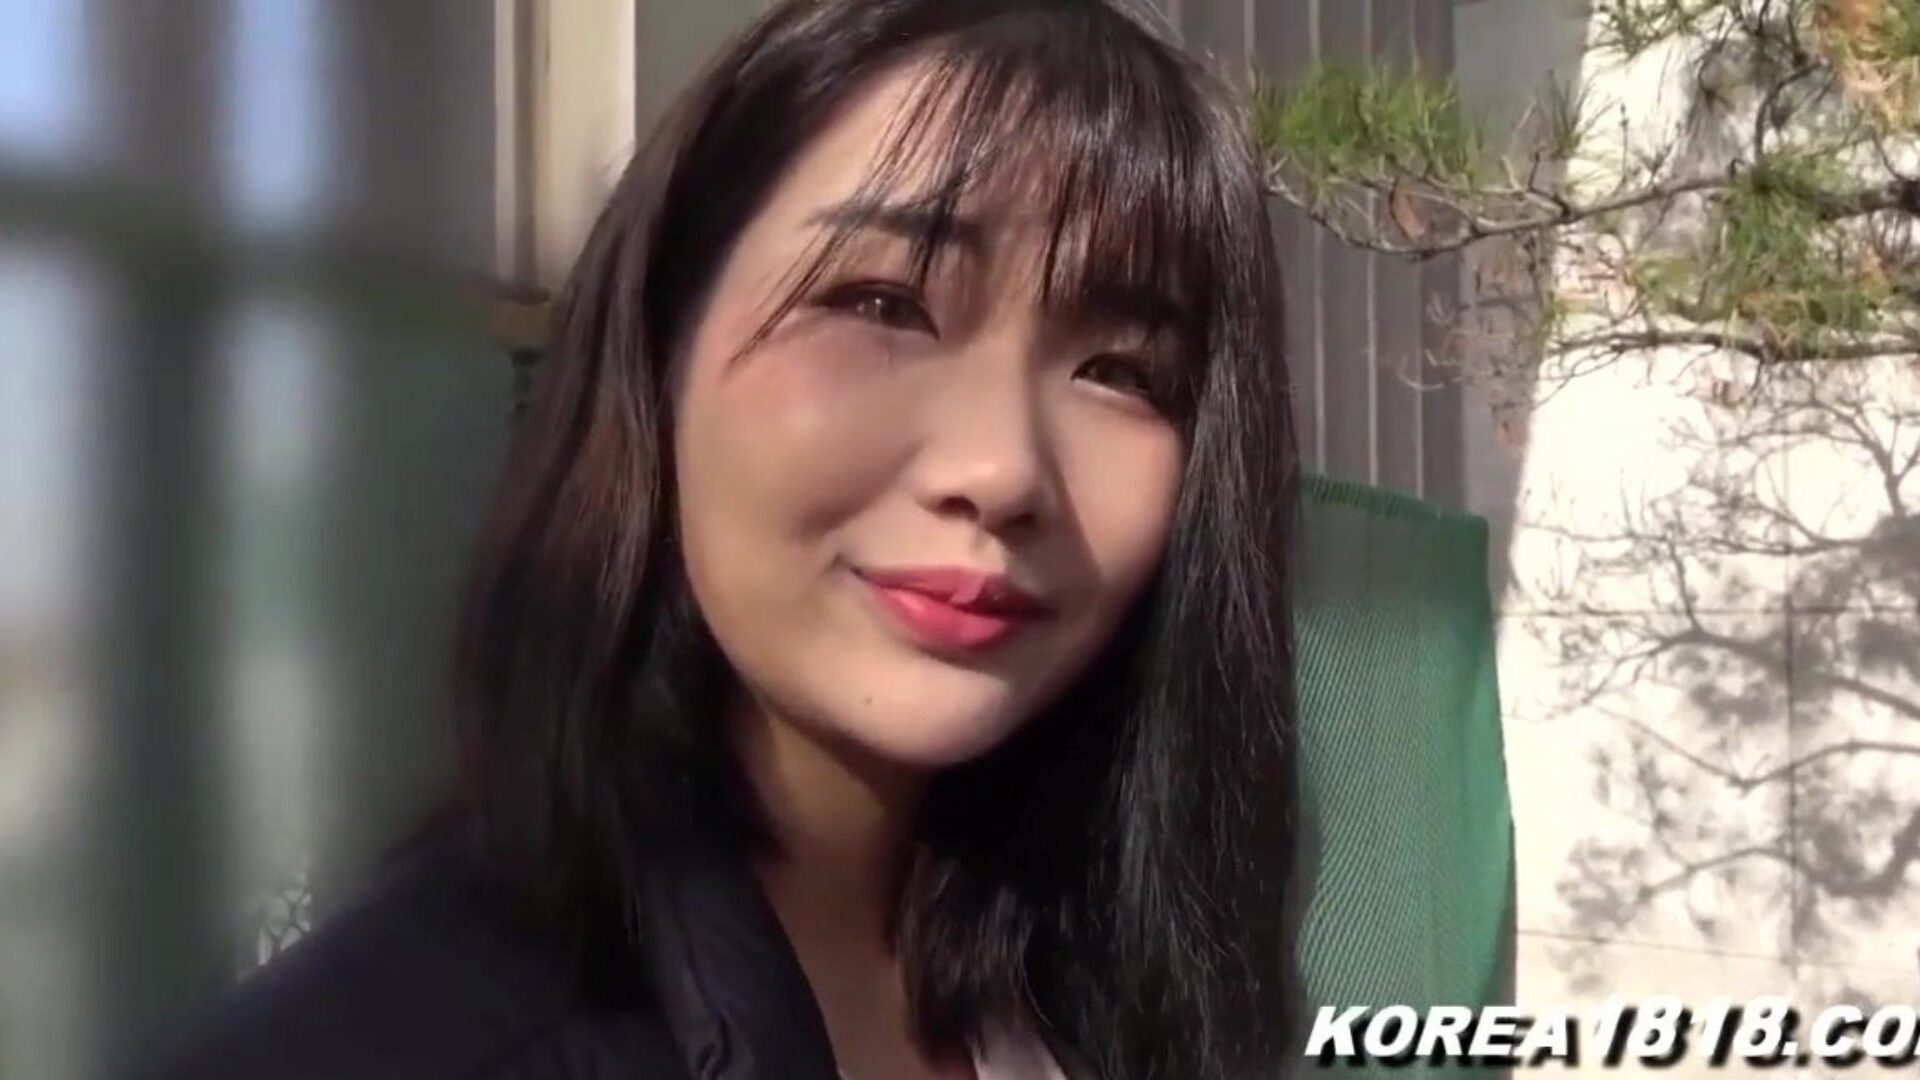 korealainen porno super kuuma korealainen lutka saa munaa